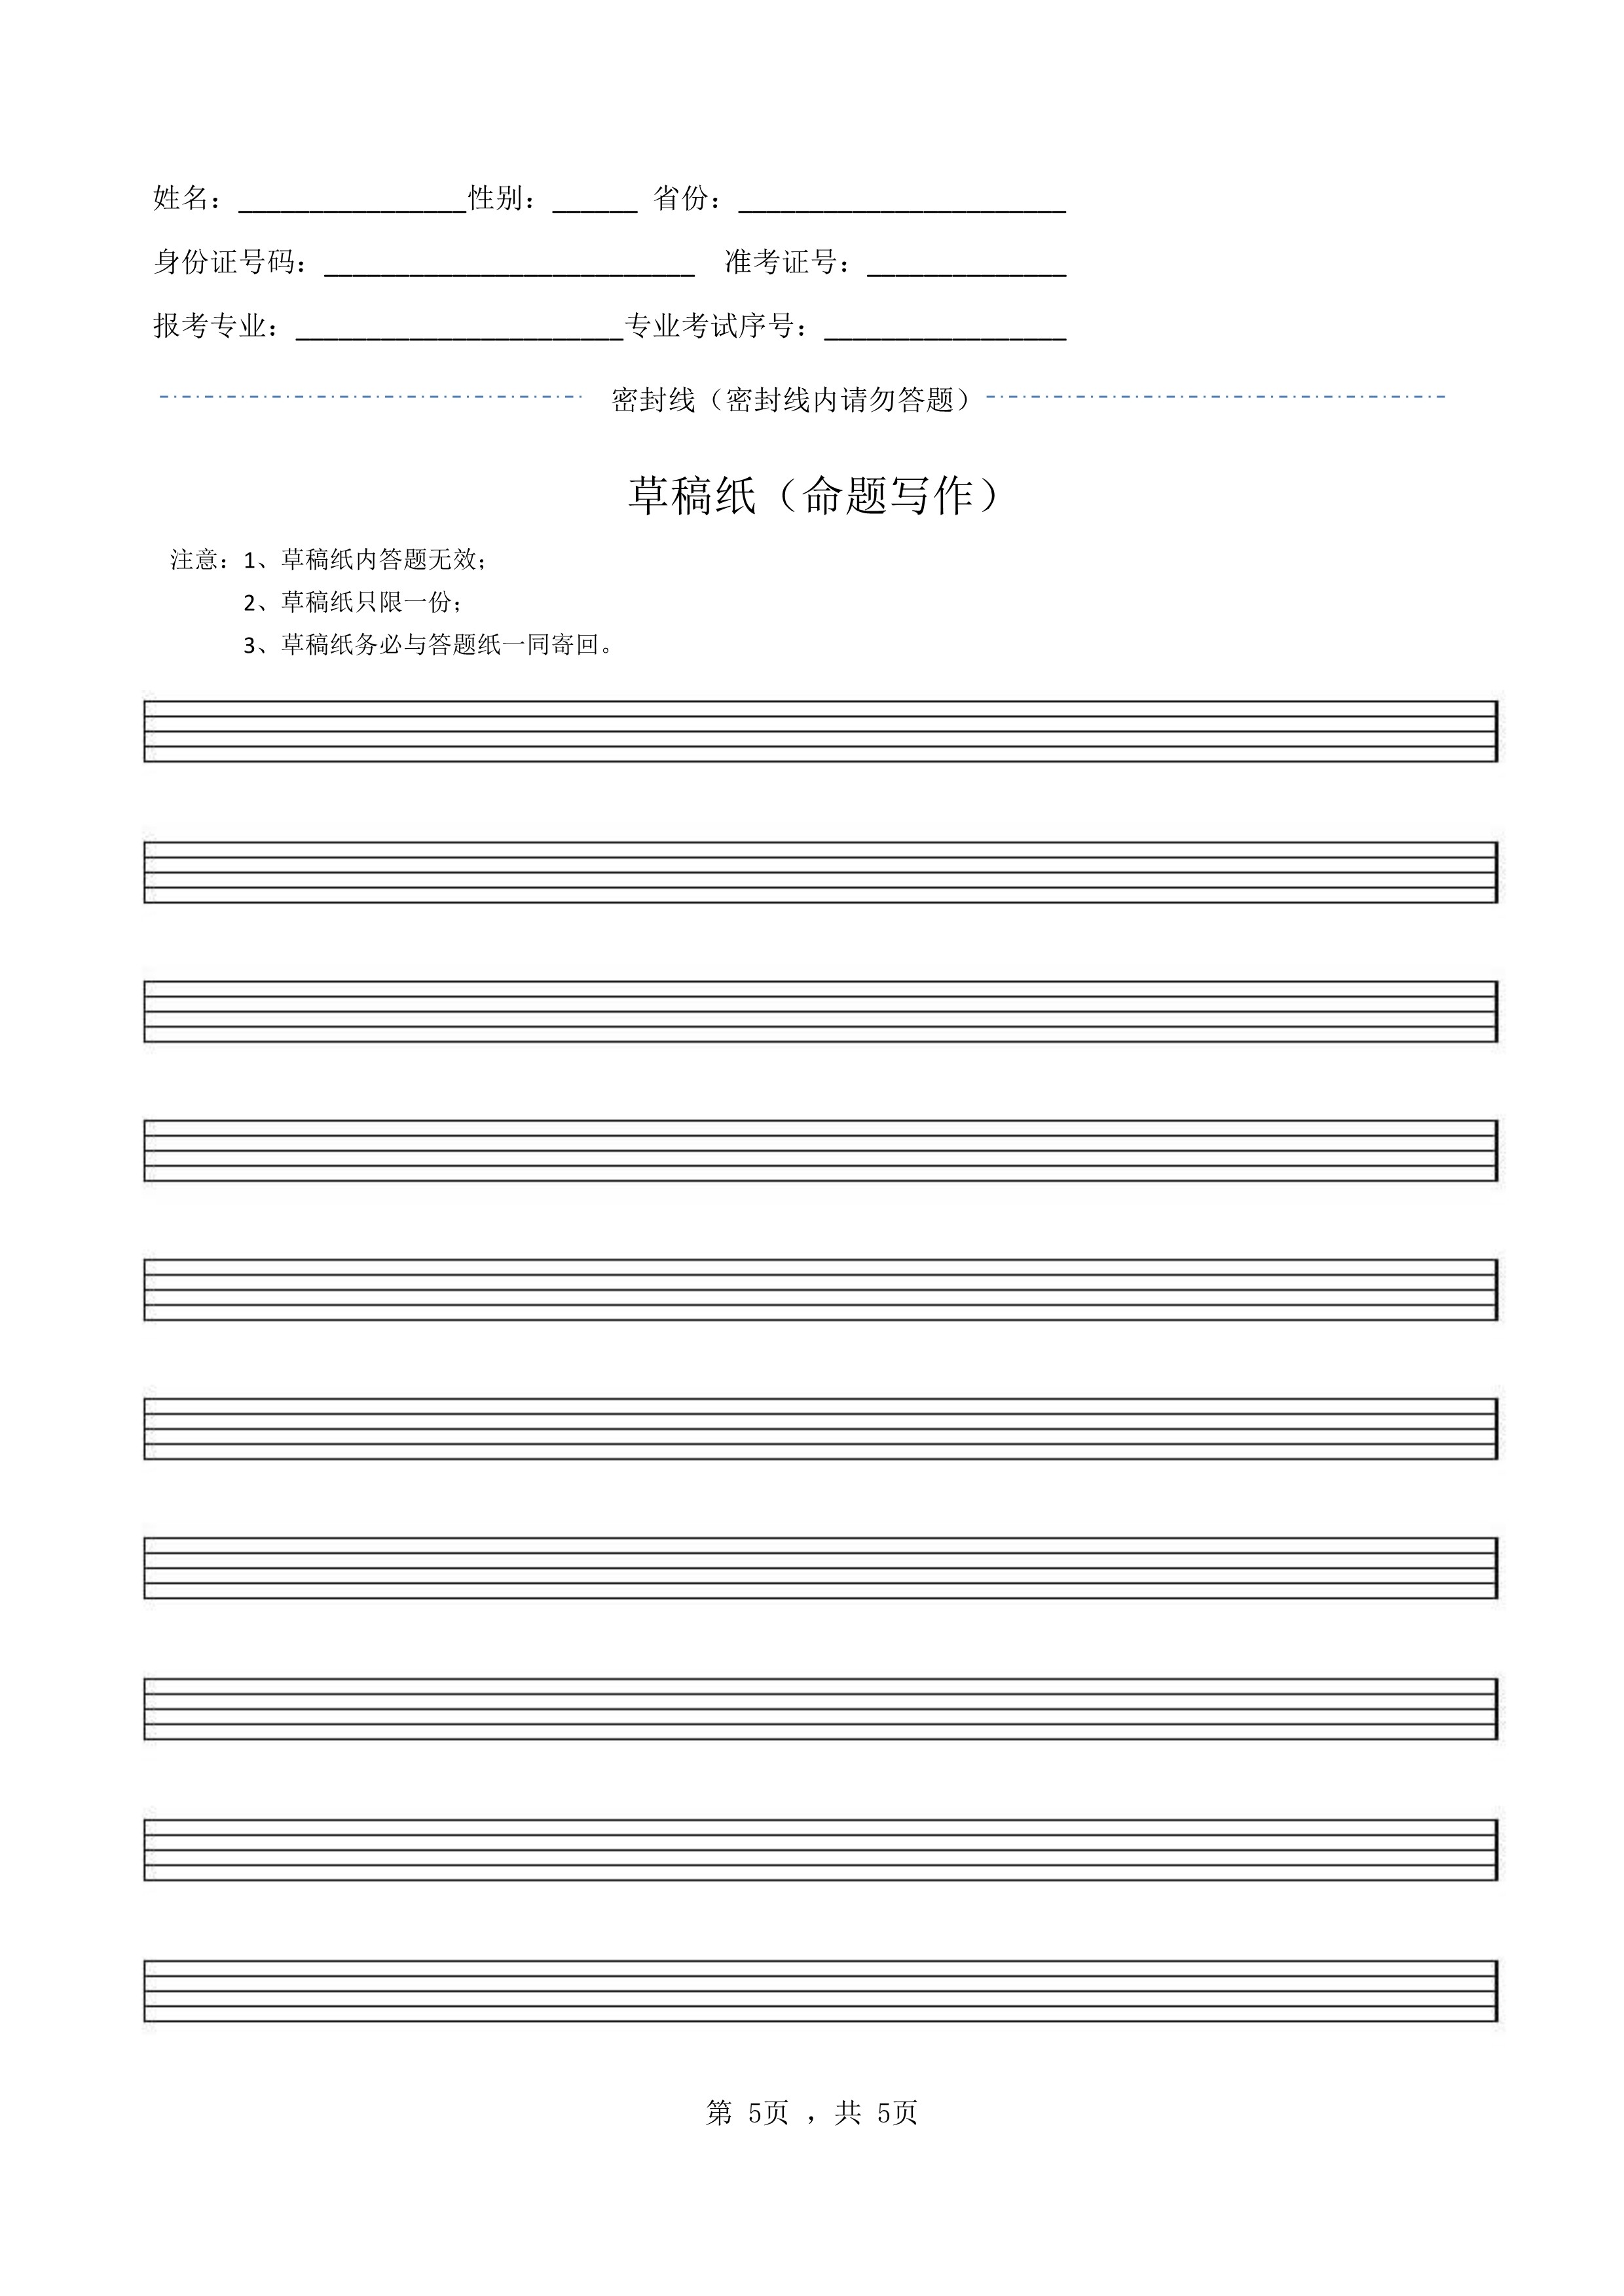 南京艺术学院2022年本科招生录音艺术专业《命题写作》科目考试答题纸及草稿纸_5.jpg